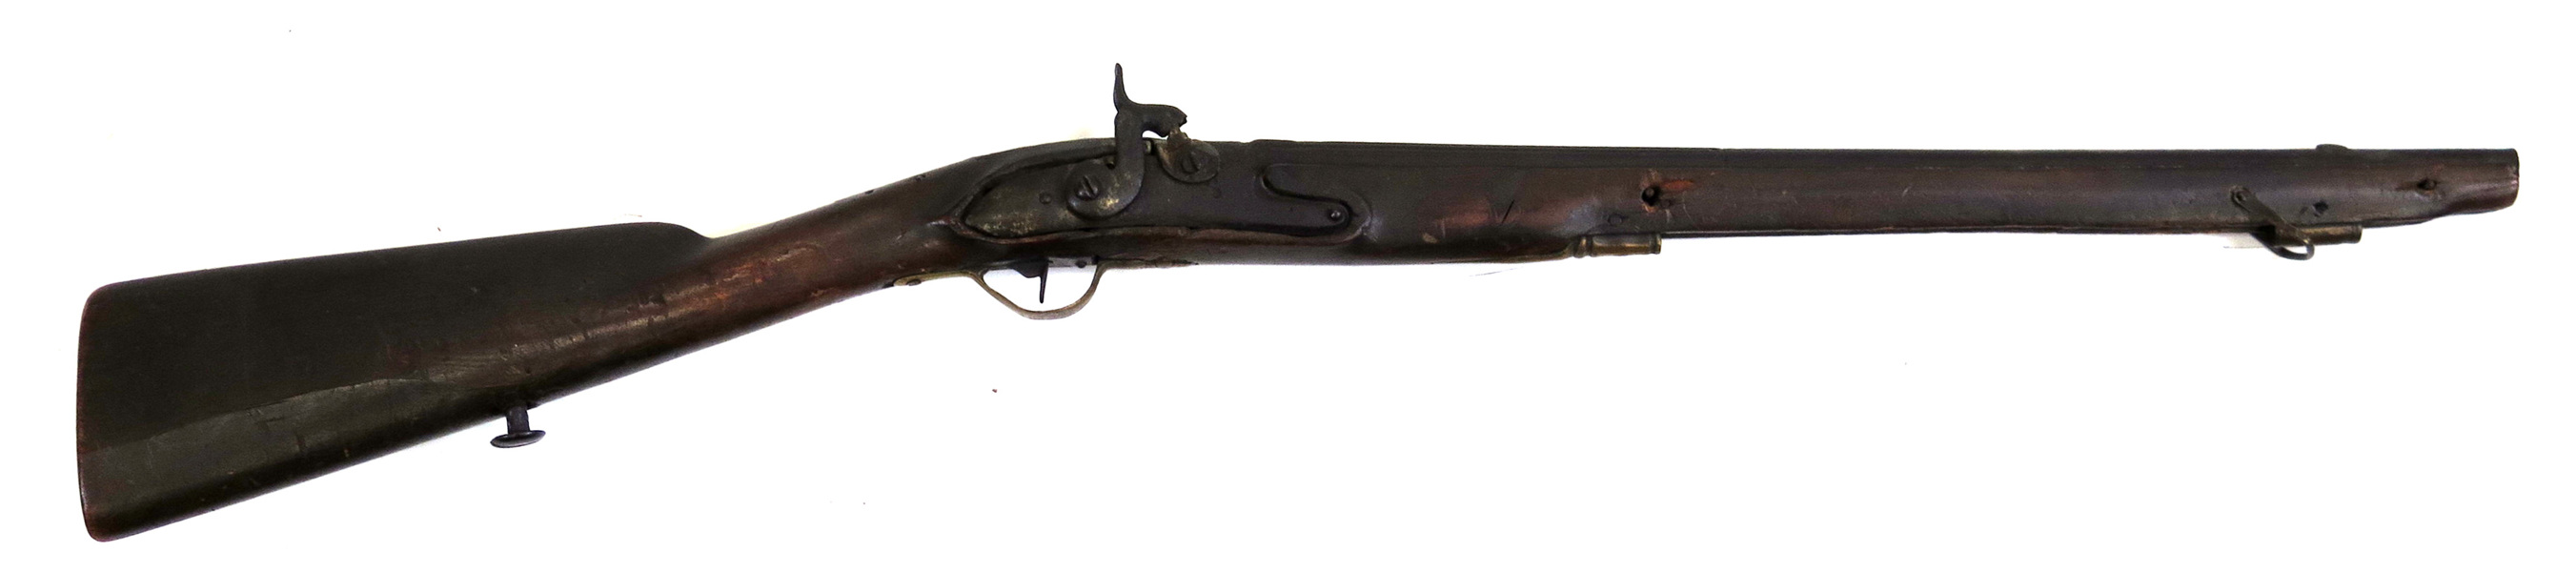 Barngevär (!), slag- från flintlås, 1800-talets 1 hälft, _4243a_8d884bf4b97a151_lg.jpeg